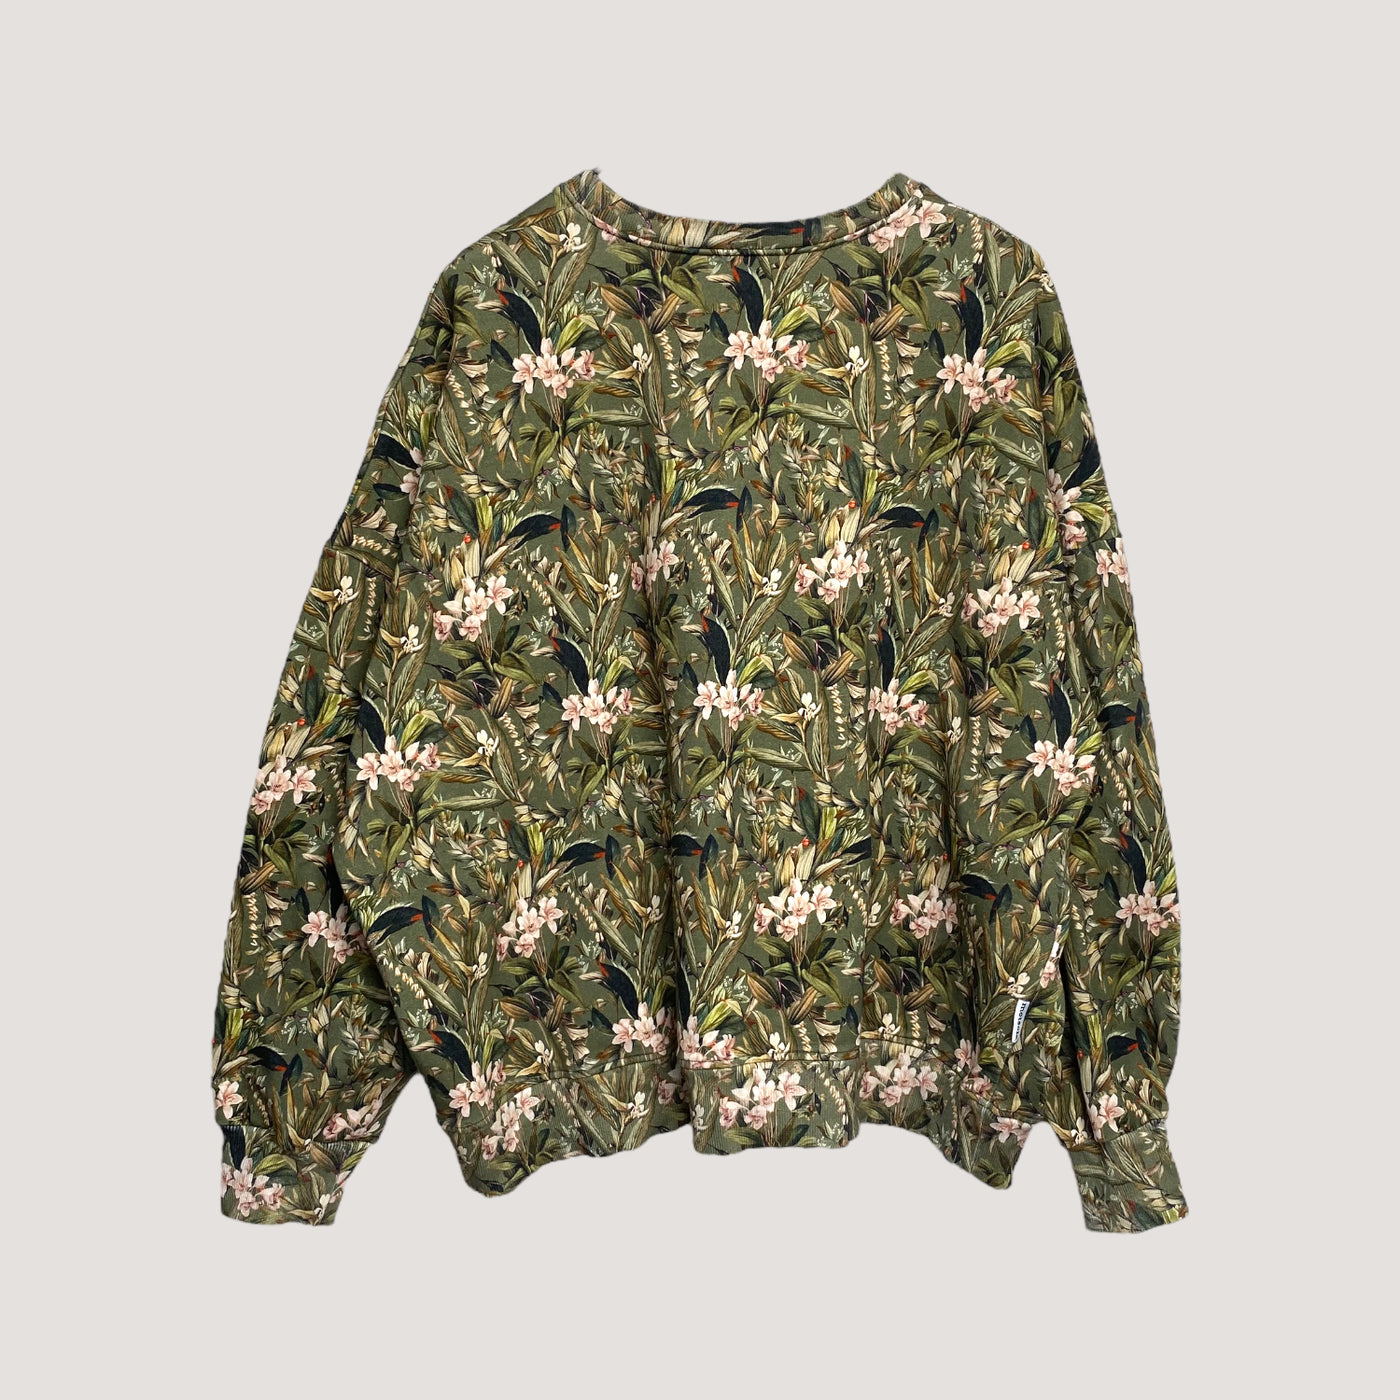 Metsola sweatshirt, flowers | woman L